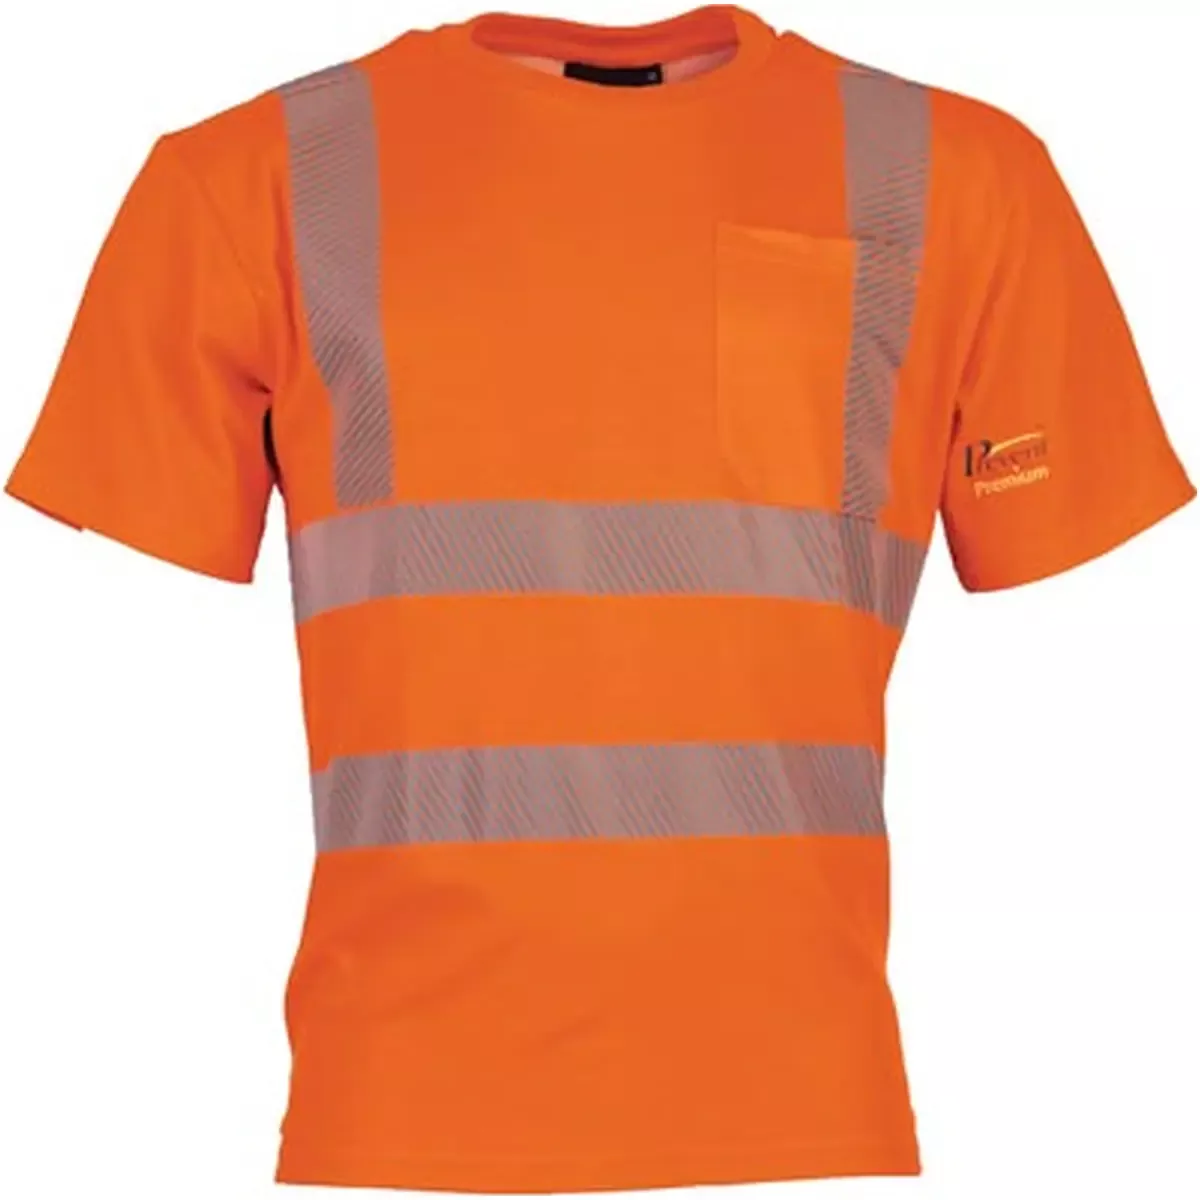 Warnschutz-T-Shirt Prevent Trendline, Farbe leuchtorange, Gr. 2XL